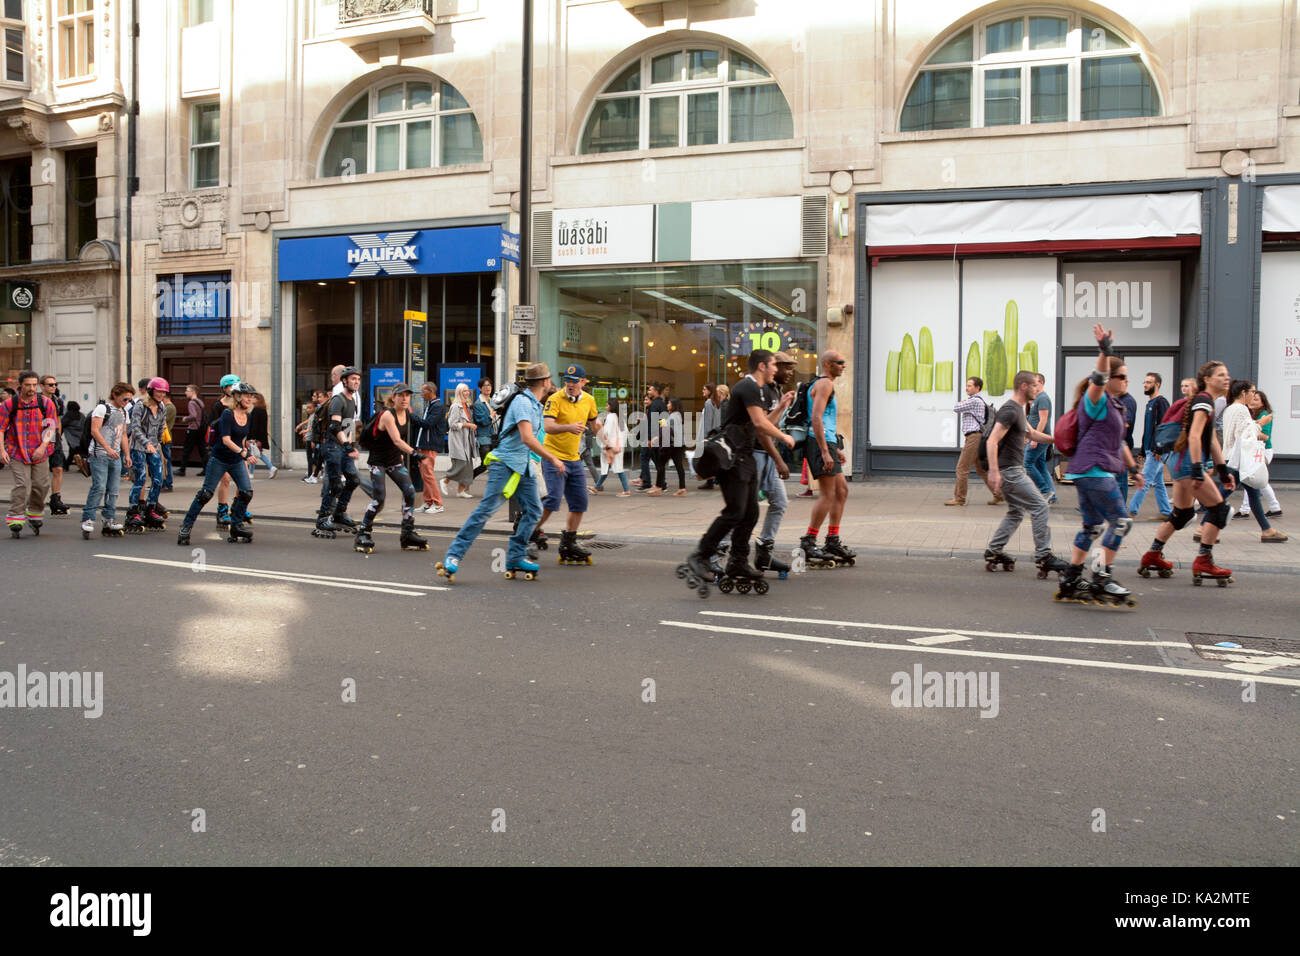 Londres, Inglaterra. 24 de septiembre de 2017: grupo organizado de roller dirigiéndose hacia el este por Oxford Street en la carretera con tráfico tras ellos en Londres, Inglaterra. Martin Parker/Alamy Live News Foto de stock